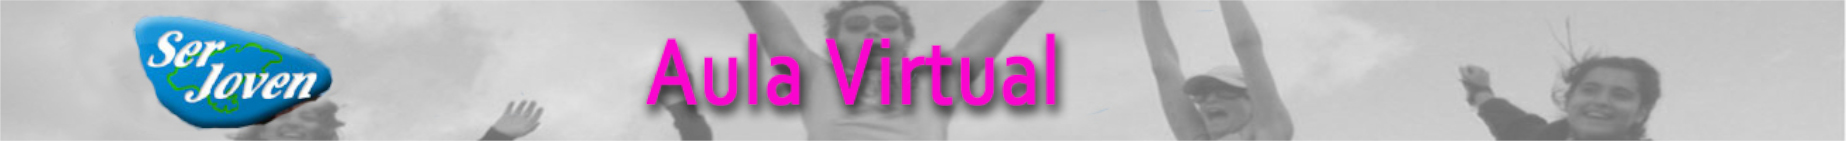 Logotipo de Asociación Ser Joven. Aula Virtual